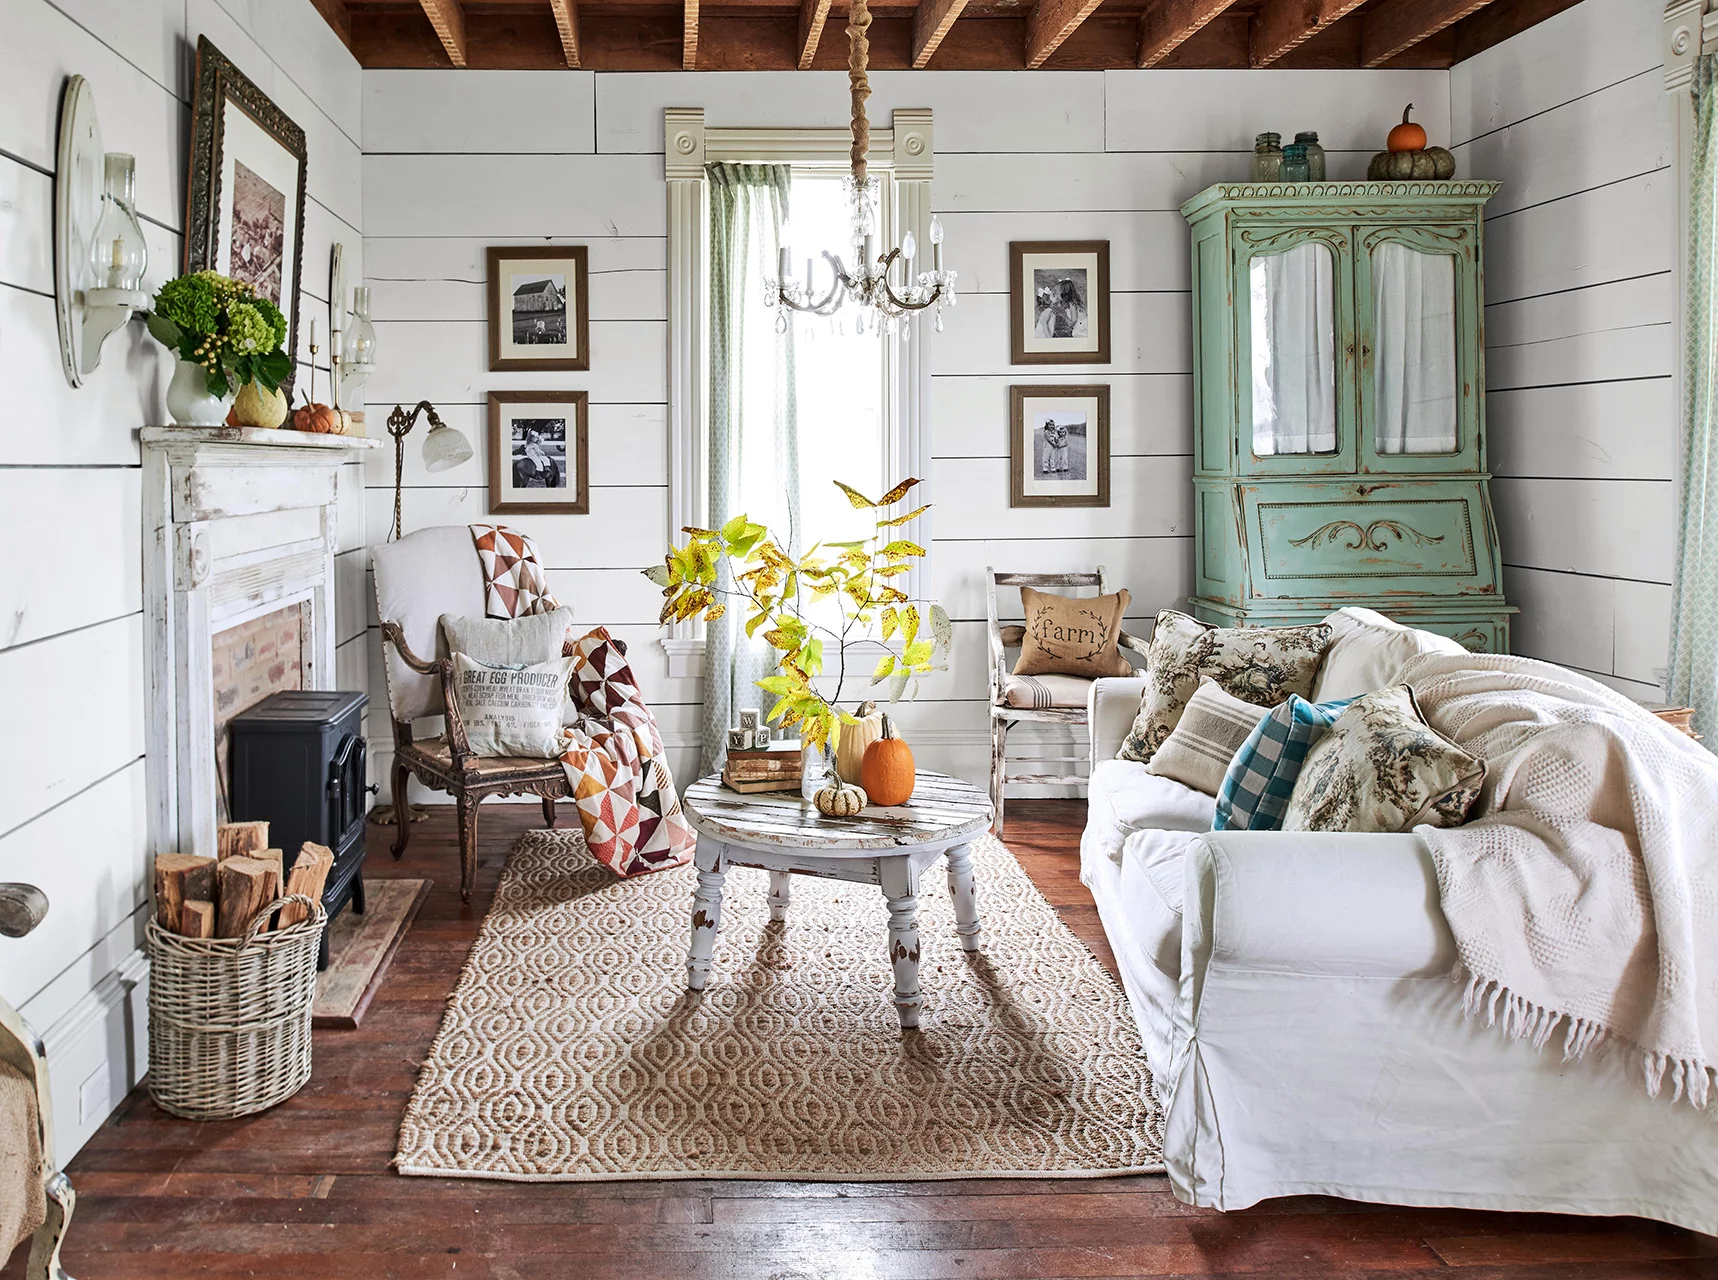 Un soggiorno rustico bianco - crea un rifugio rurale nella tua casa